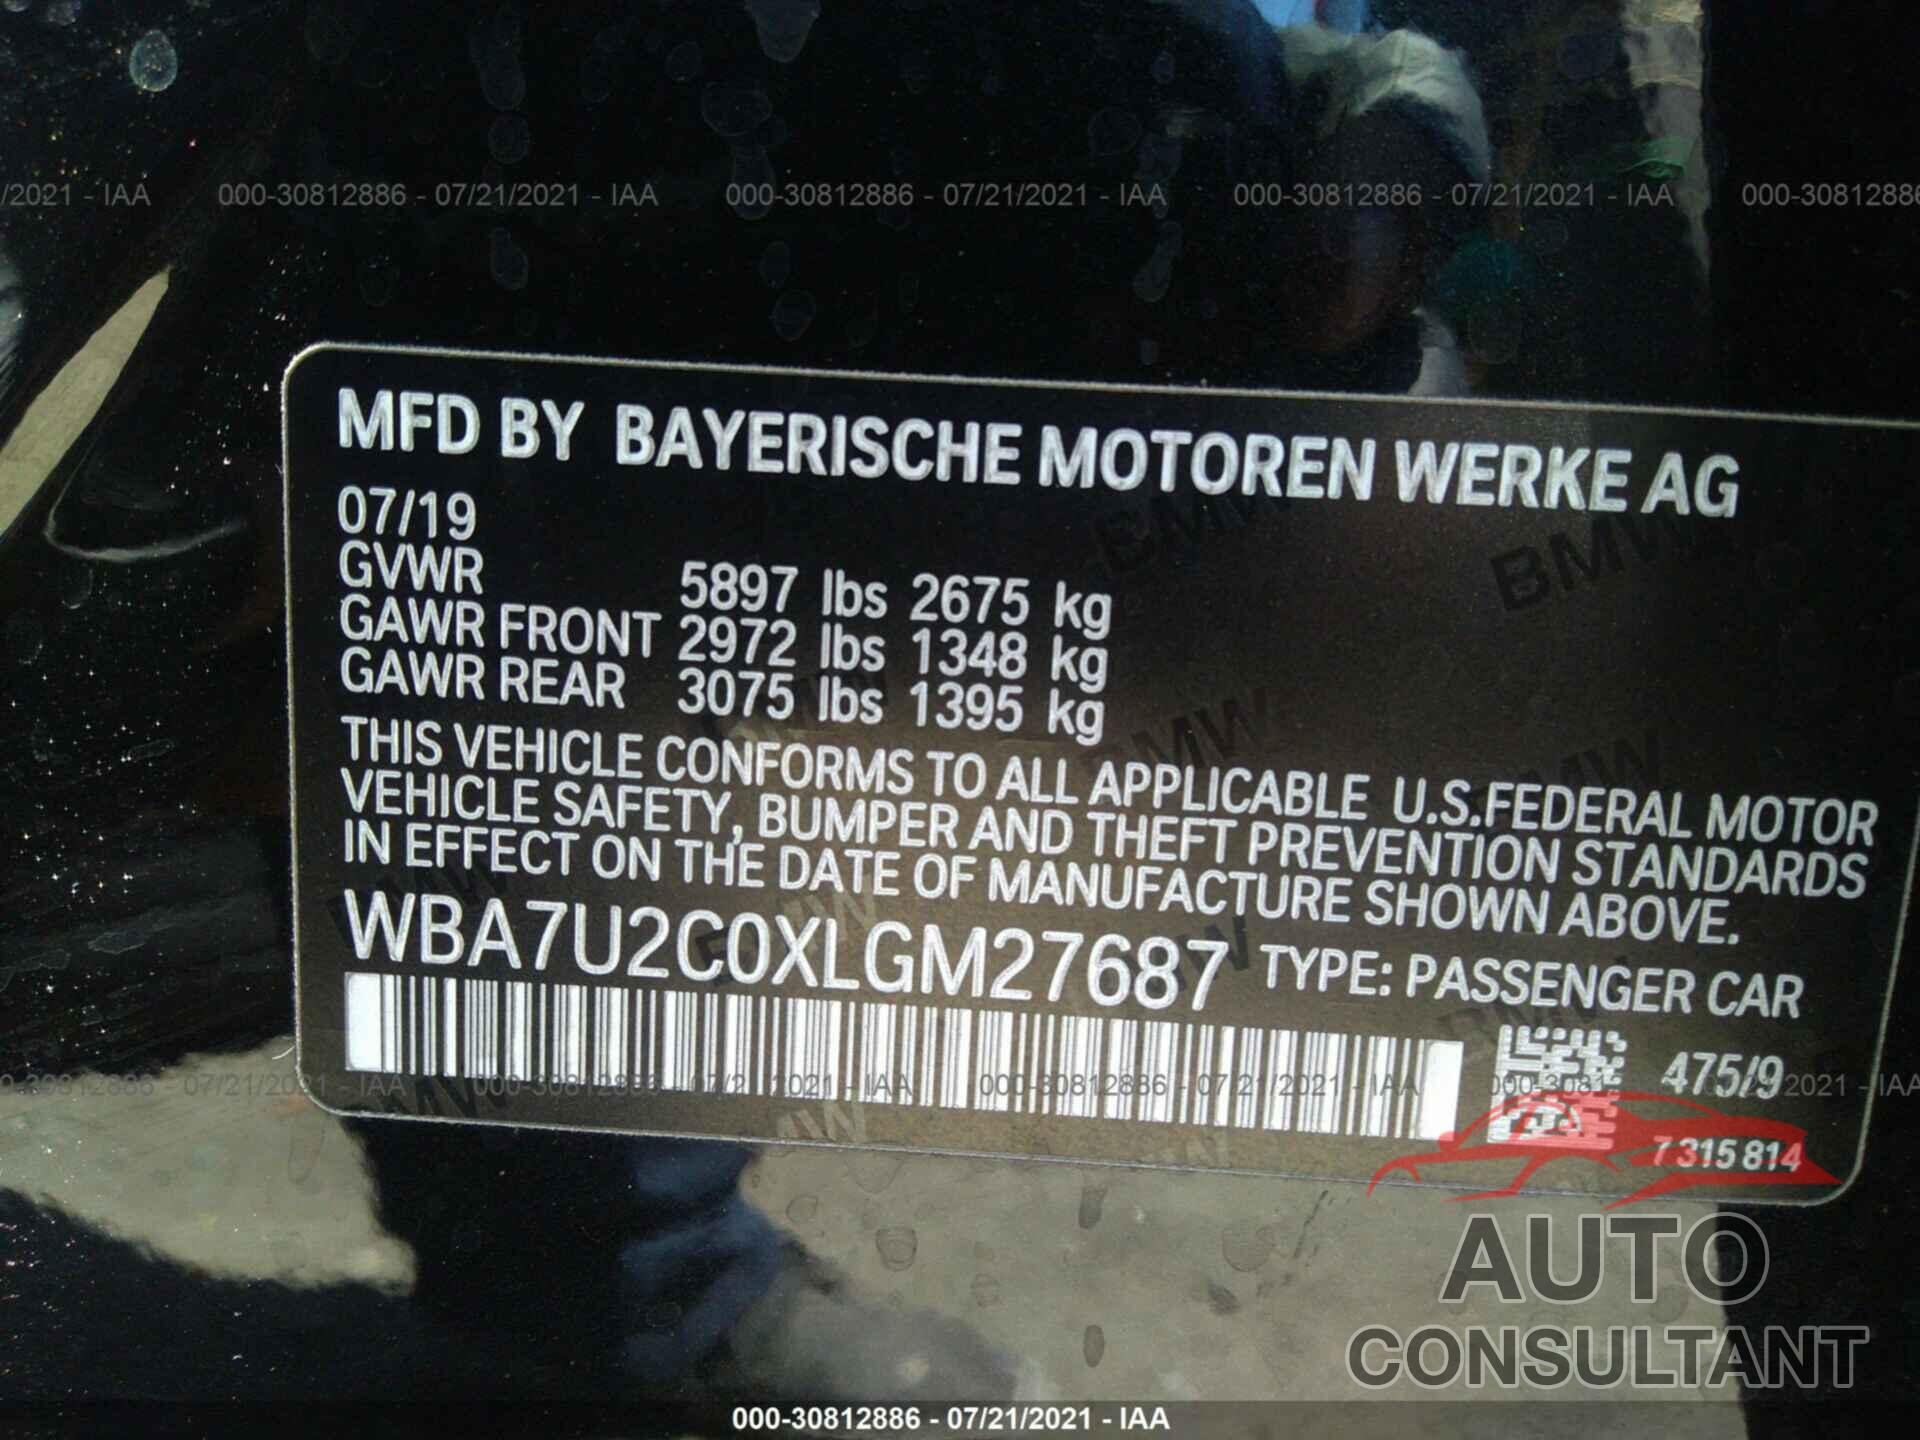 BMW 7 SERIES 2020 - WBA7U2C0XLGM27687